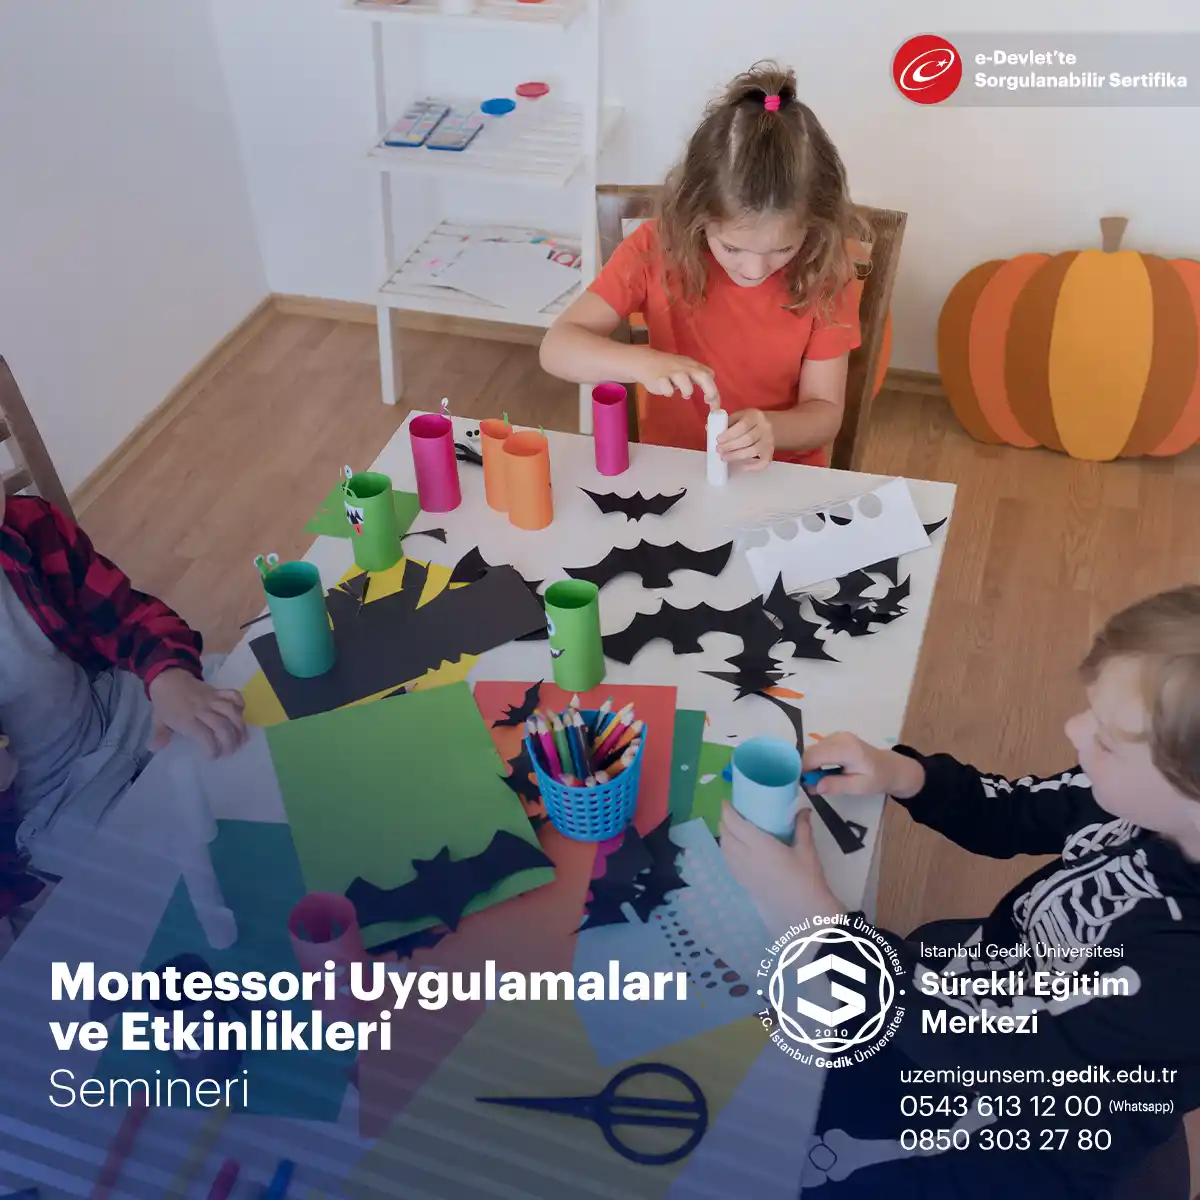 Montessori eğitimi, Maria Montessori tarafından geliştirilen bir öğrenme yaklaşımıdır.